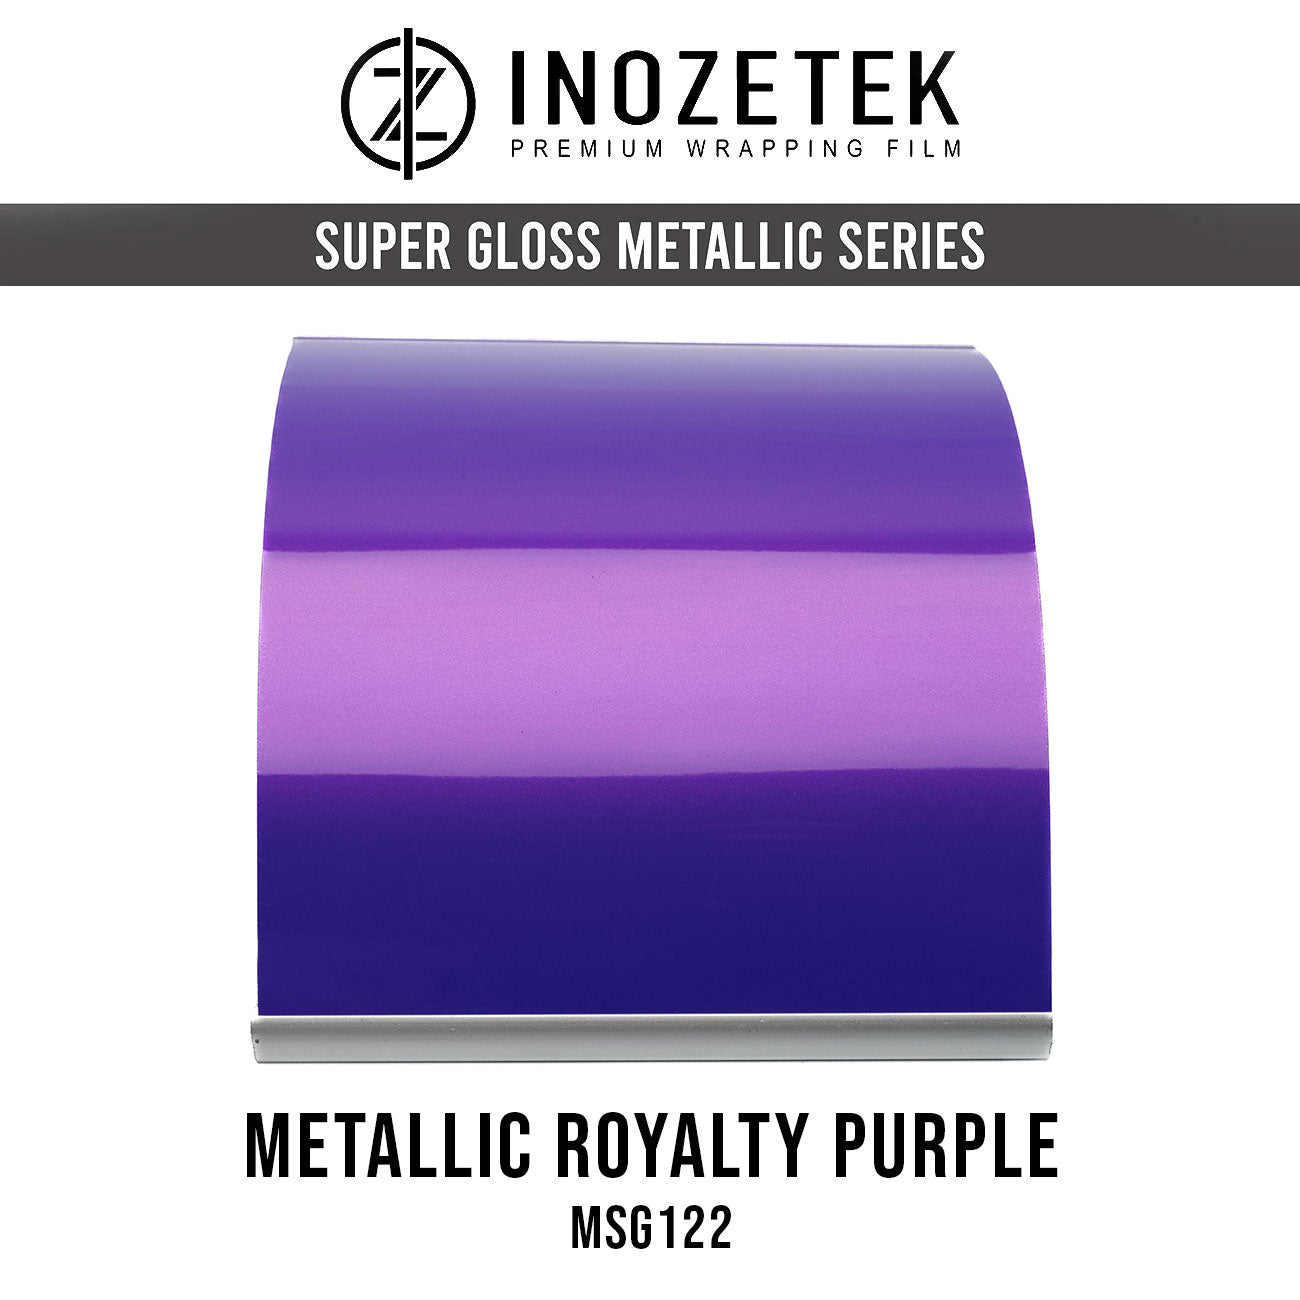 Super Gloss Metallic Royalty Purple - Inozetek USA